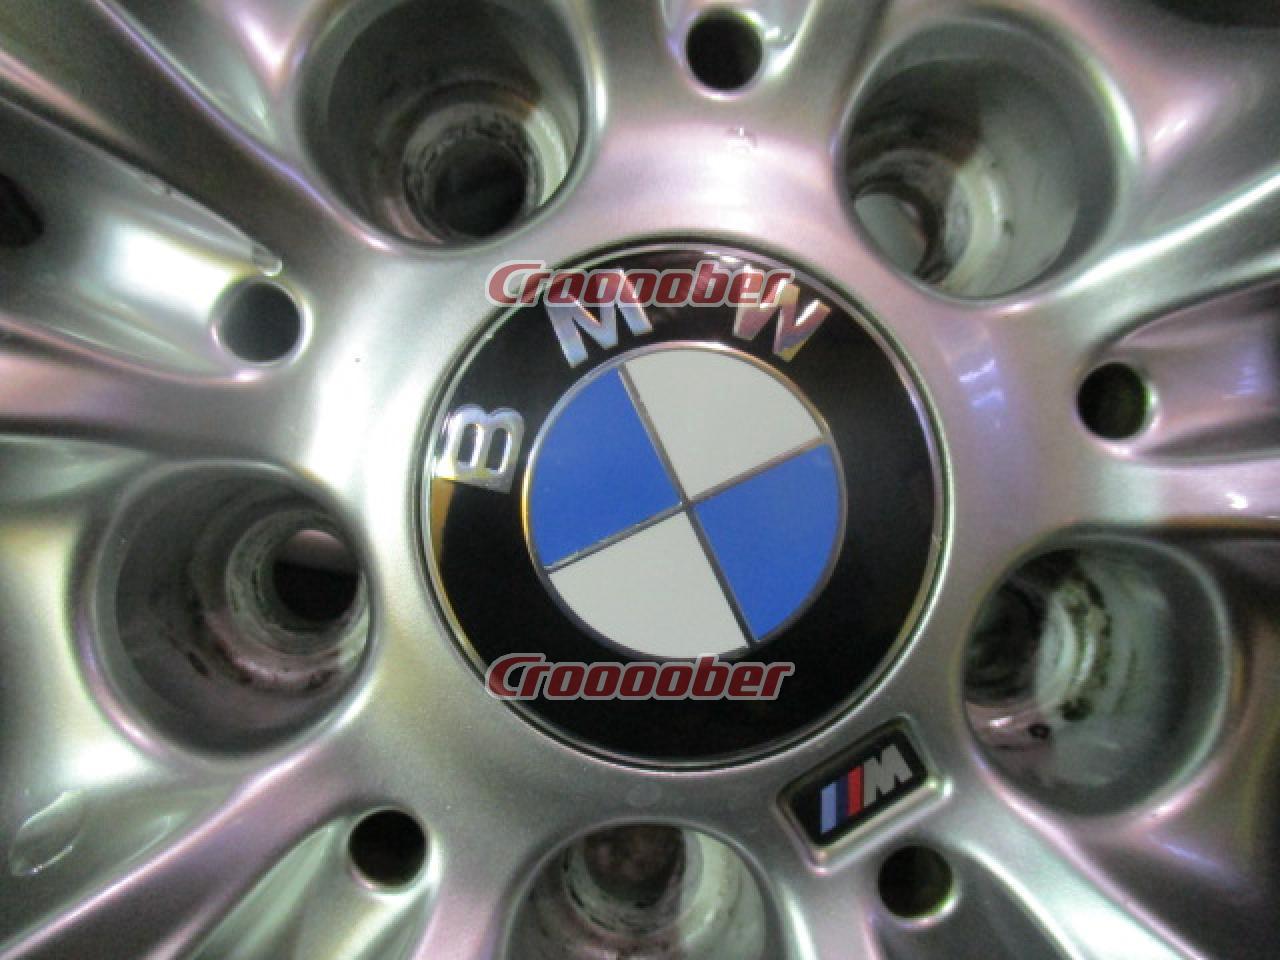 送料込】BMWホイールセット19インチ BMW 640i M-Sport | www